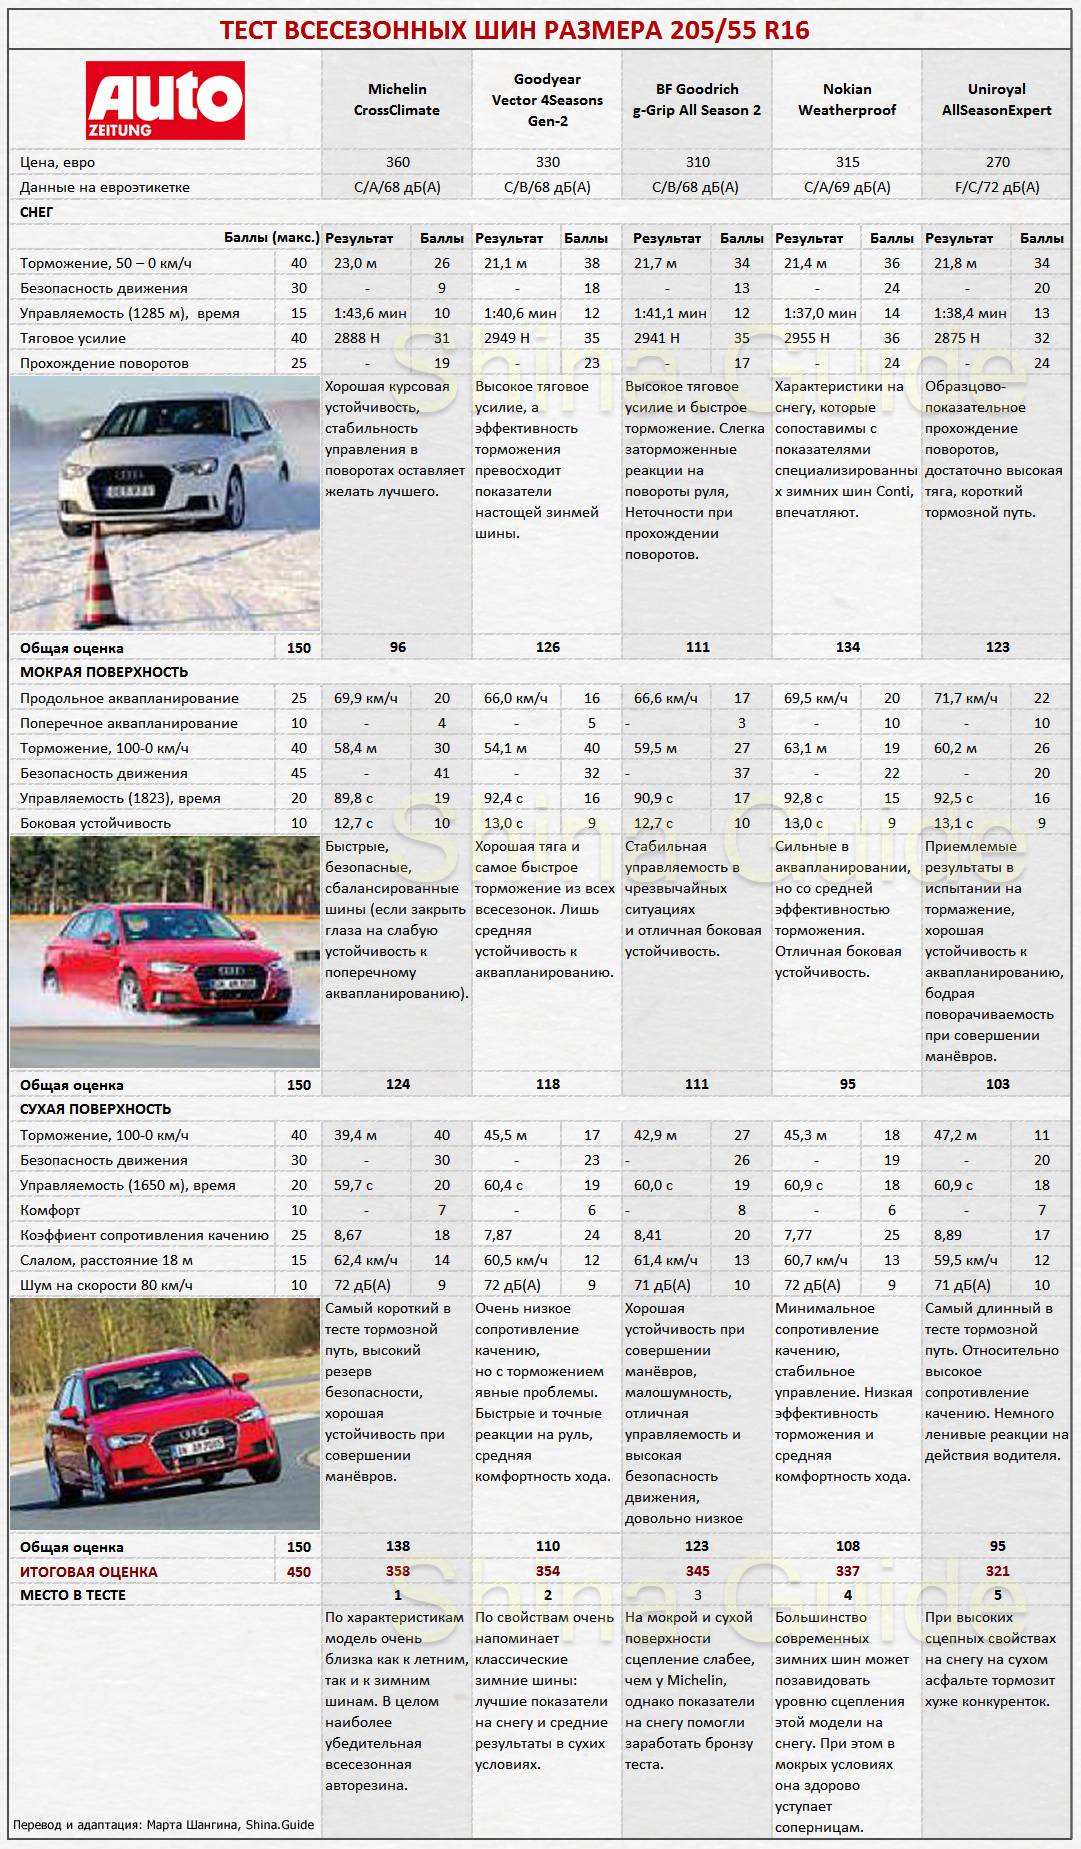 Сводная таблица результатов теста 2017 всесезонных шин 205/55 R16 от Auto Zeitung. Места с 1 по 5